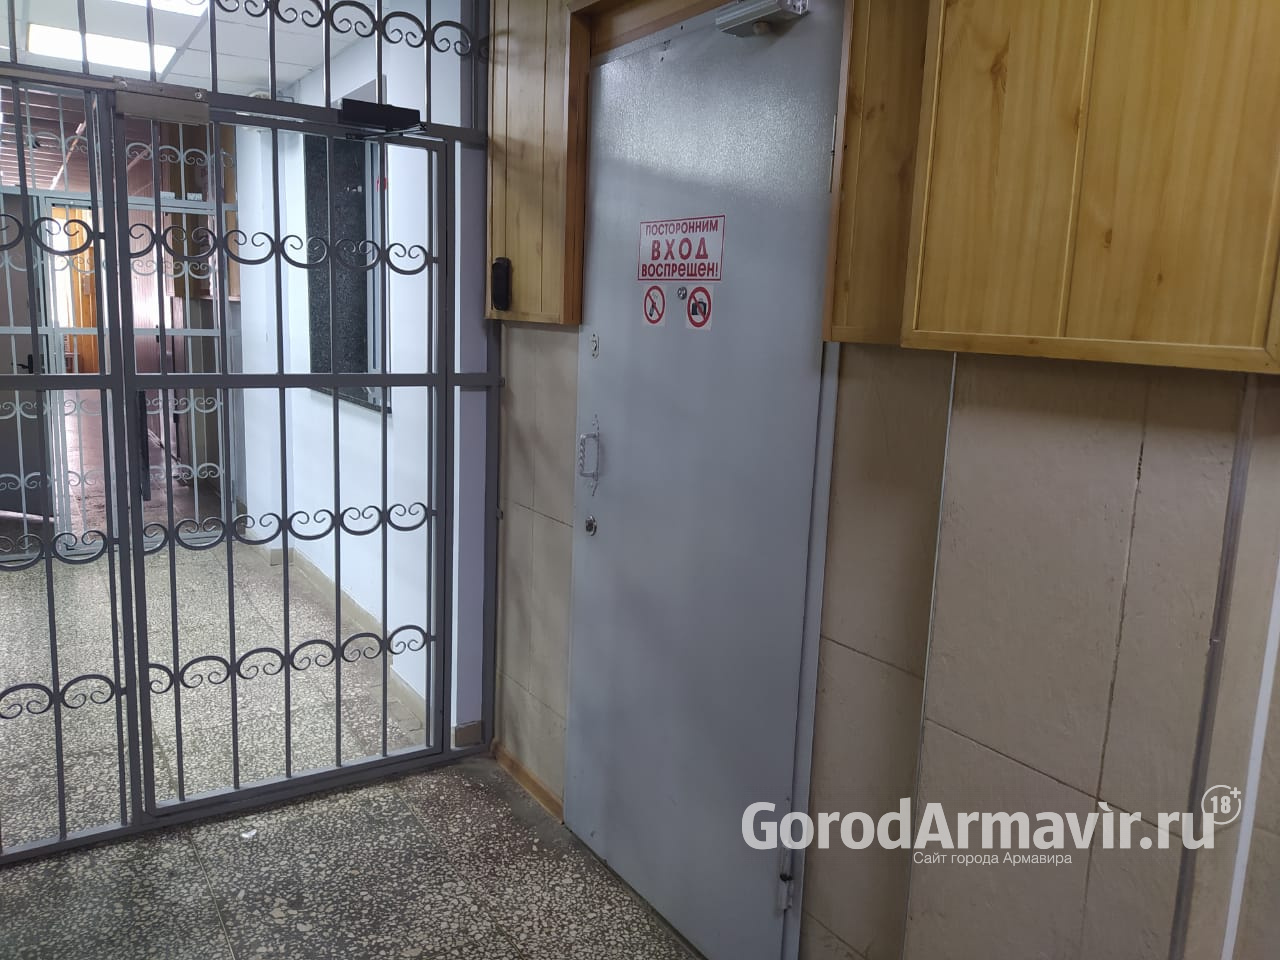 Жителю Армавира за взятку полицейскому в размере 5 тыс руб грозит год тюрьмы